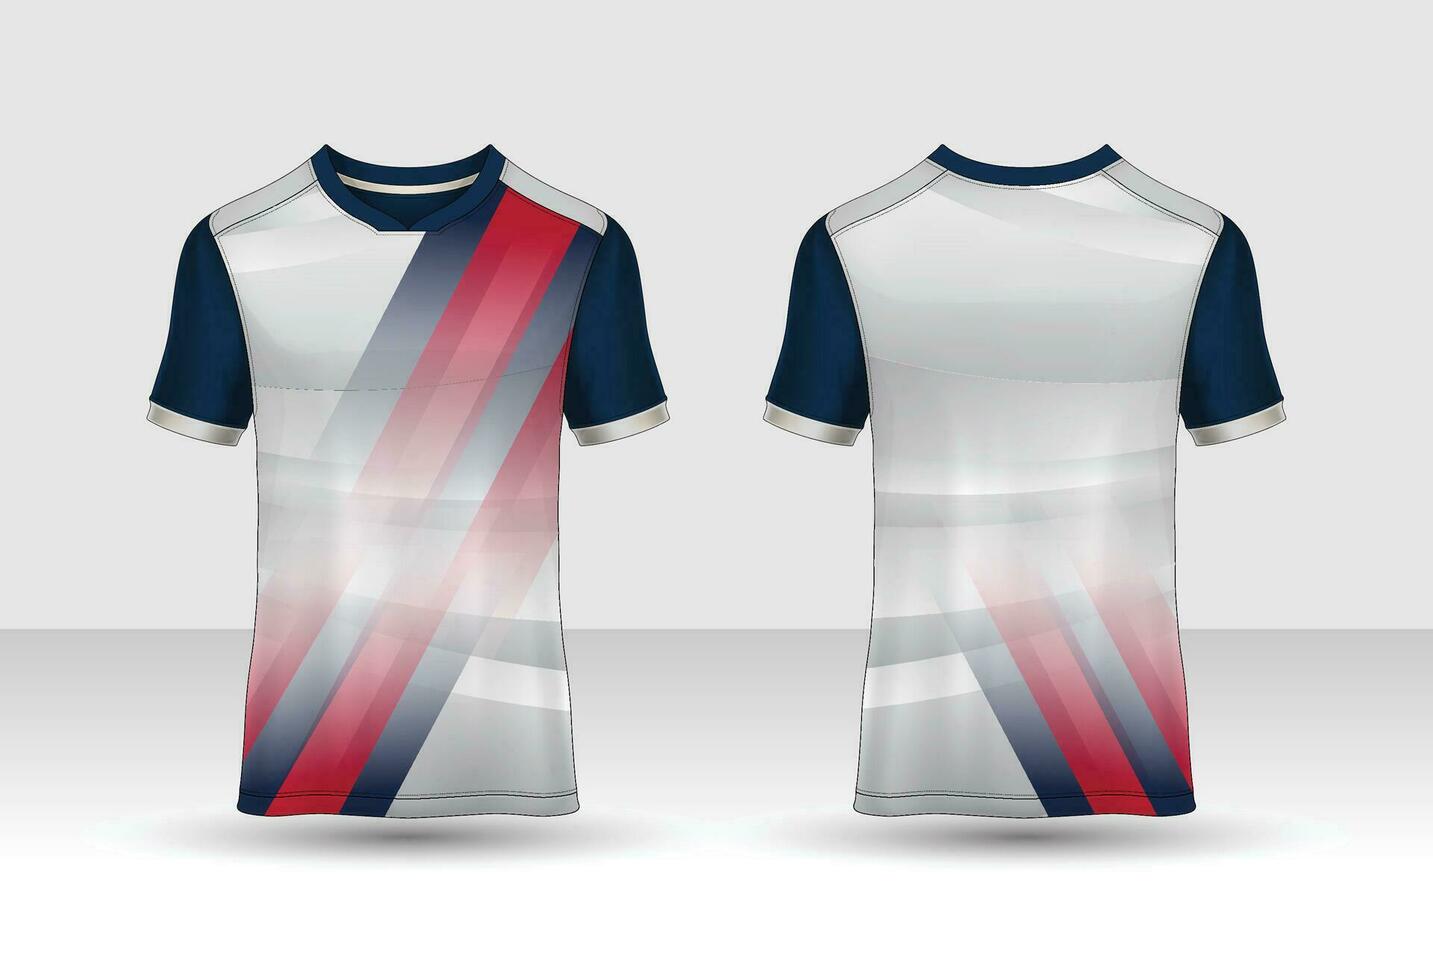 modèle de conception de t-shirt sport, maquette de maillot de football pour club de football. vue avant et arrière uniforme. vecteur